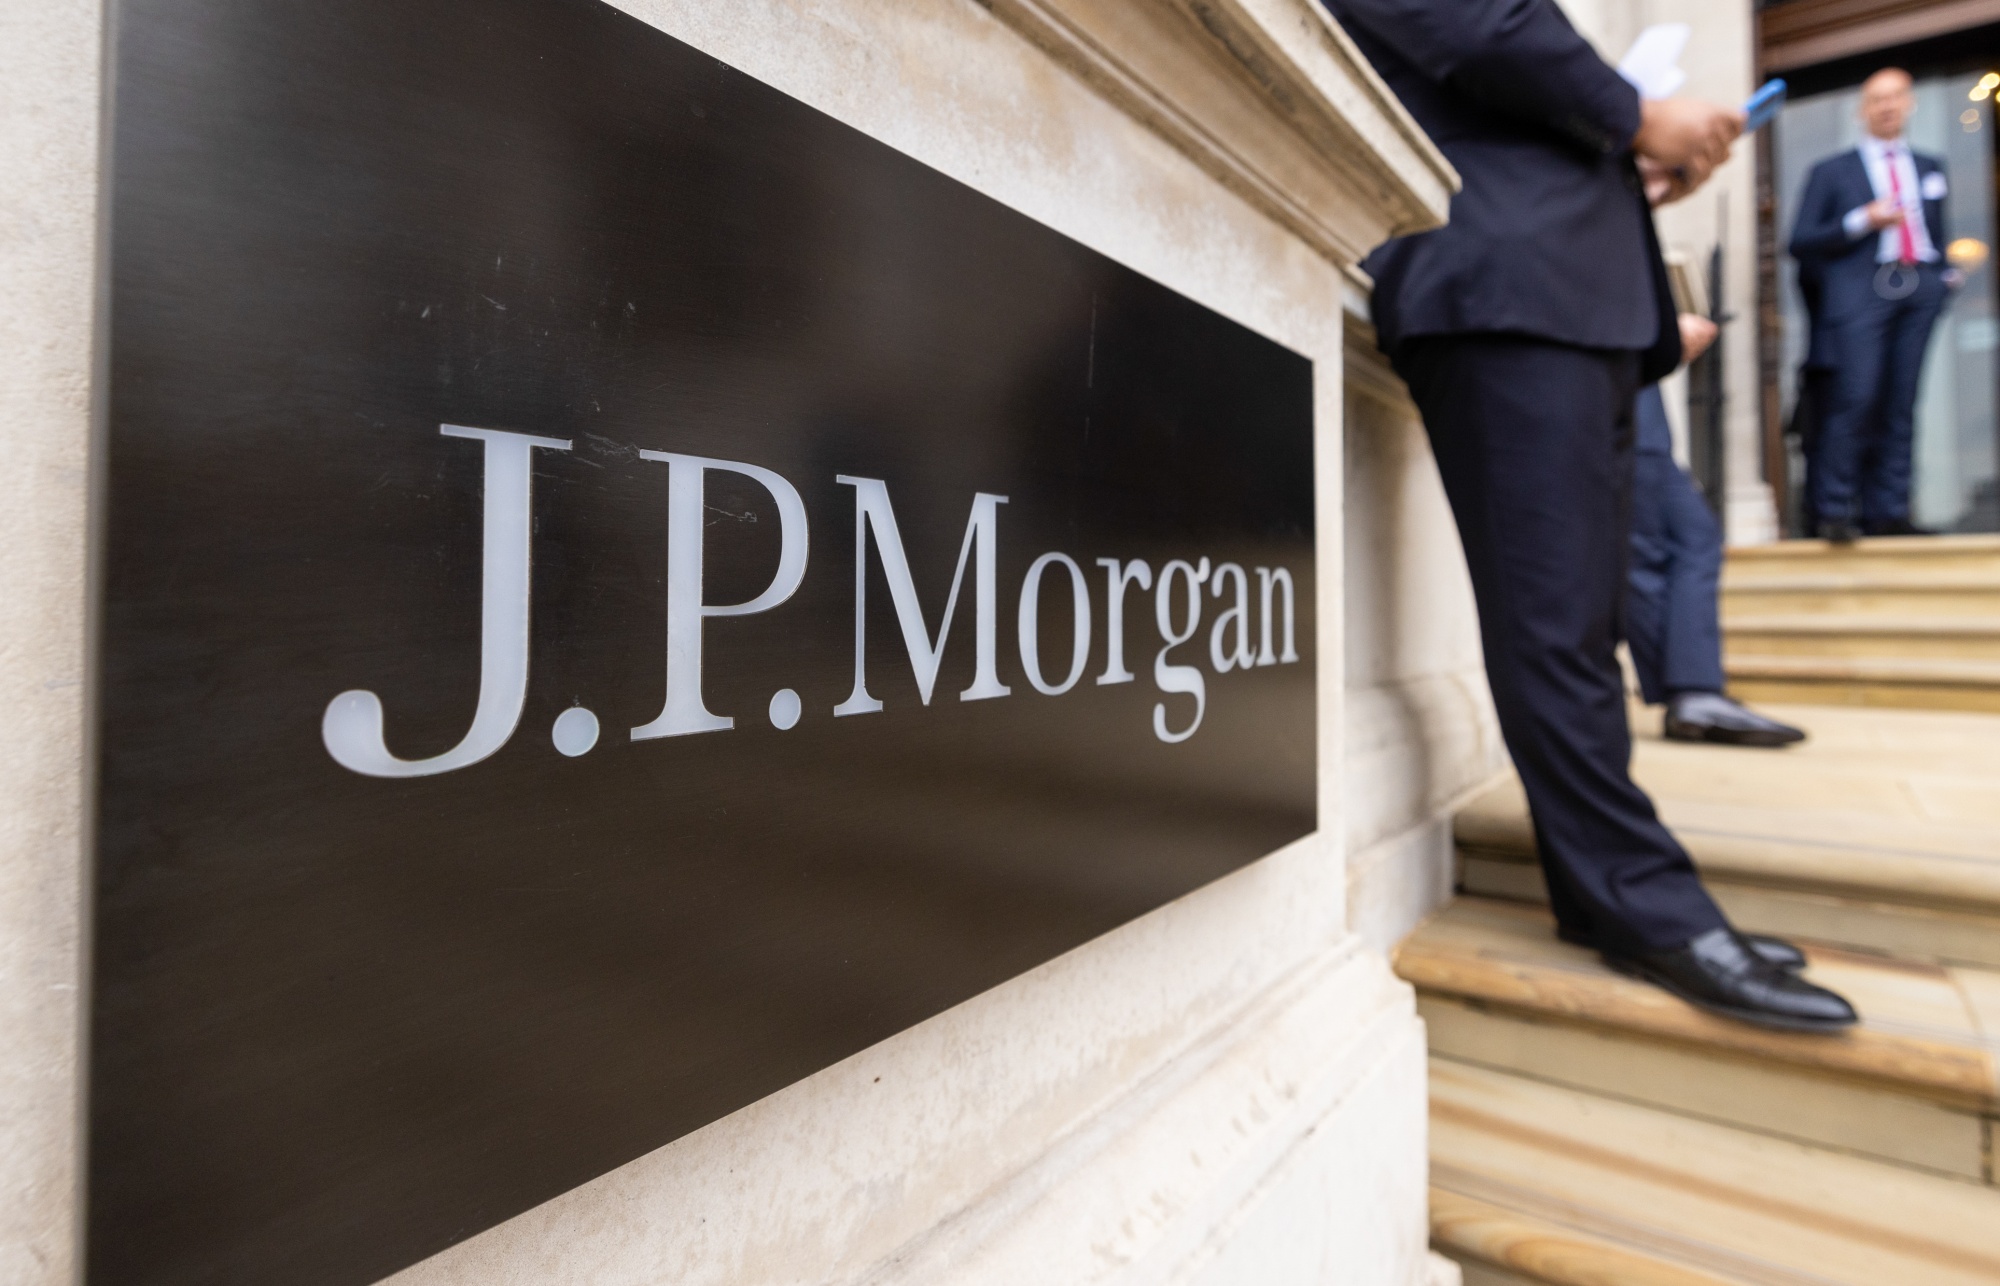 The JP Morgan Office in London. Photo: Shutterstock